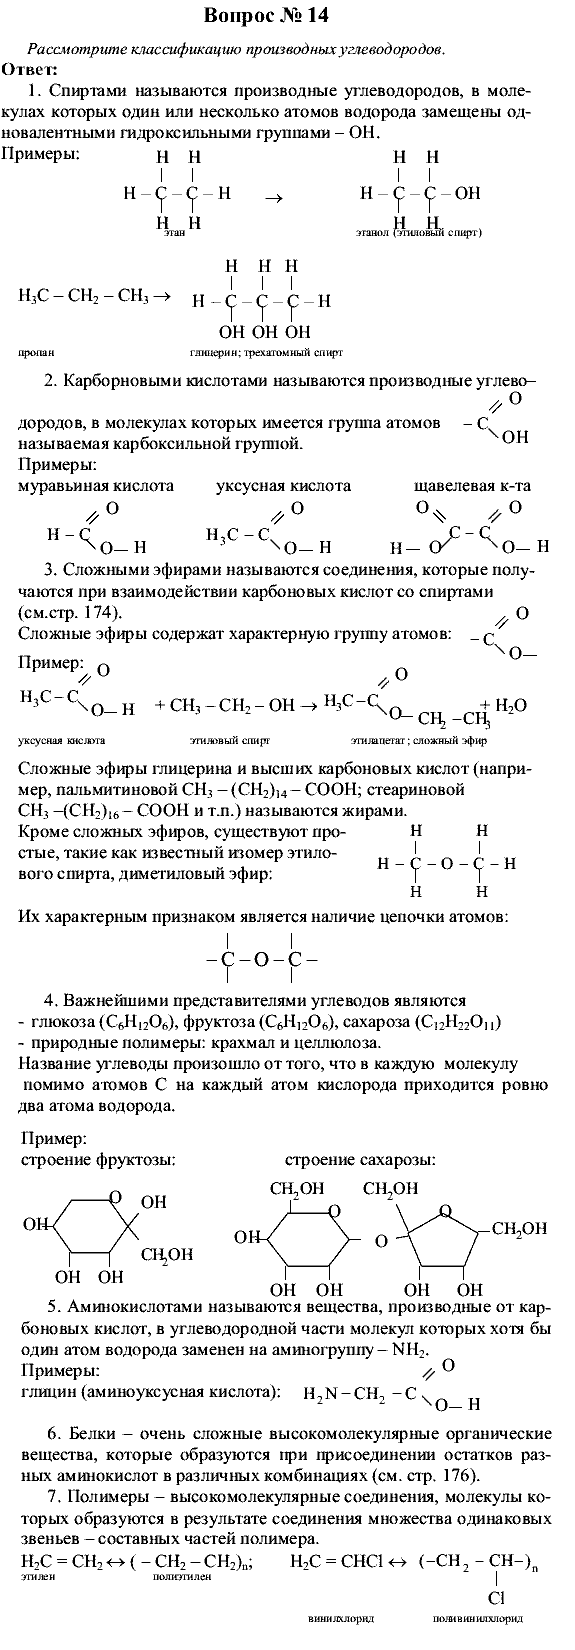 Химия, 9 класс, Рудзитис Г.Е. Фельдман Ф.Г., 2001-2012, Глава 10, №60-67, Вопросы Задача: 14